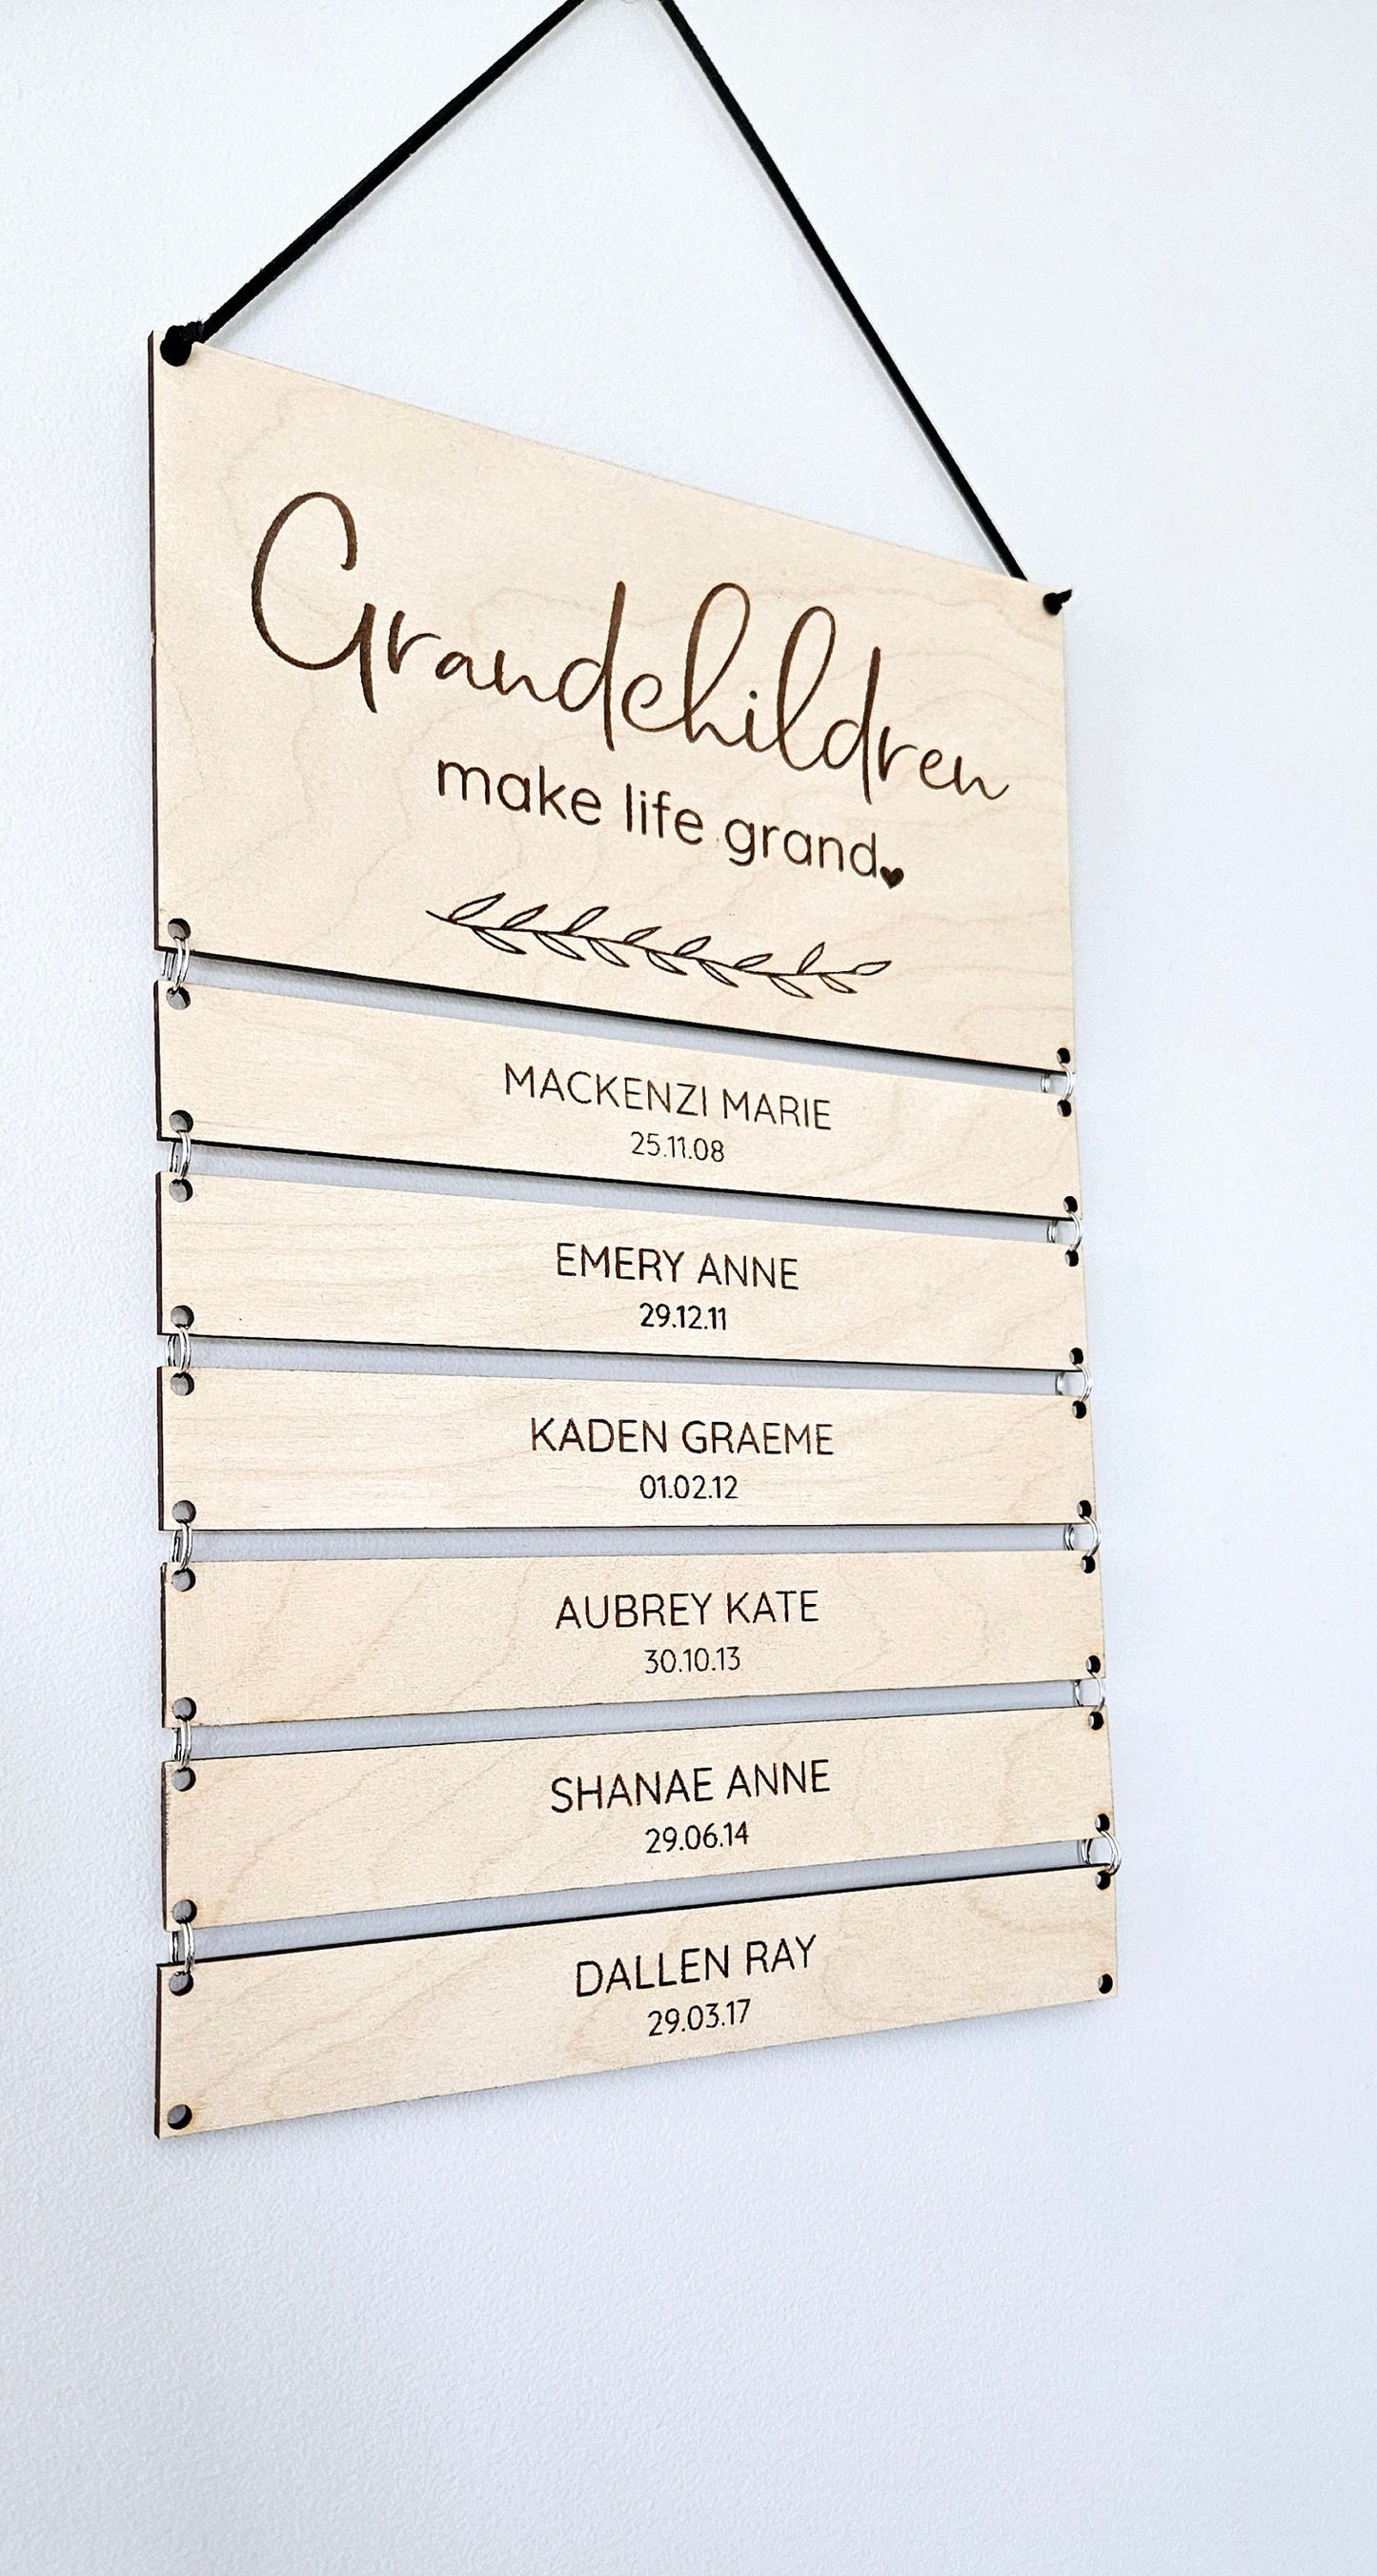 Personalized Grandchildren Make Life Grand Sign